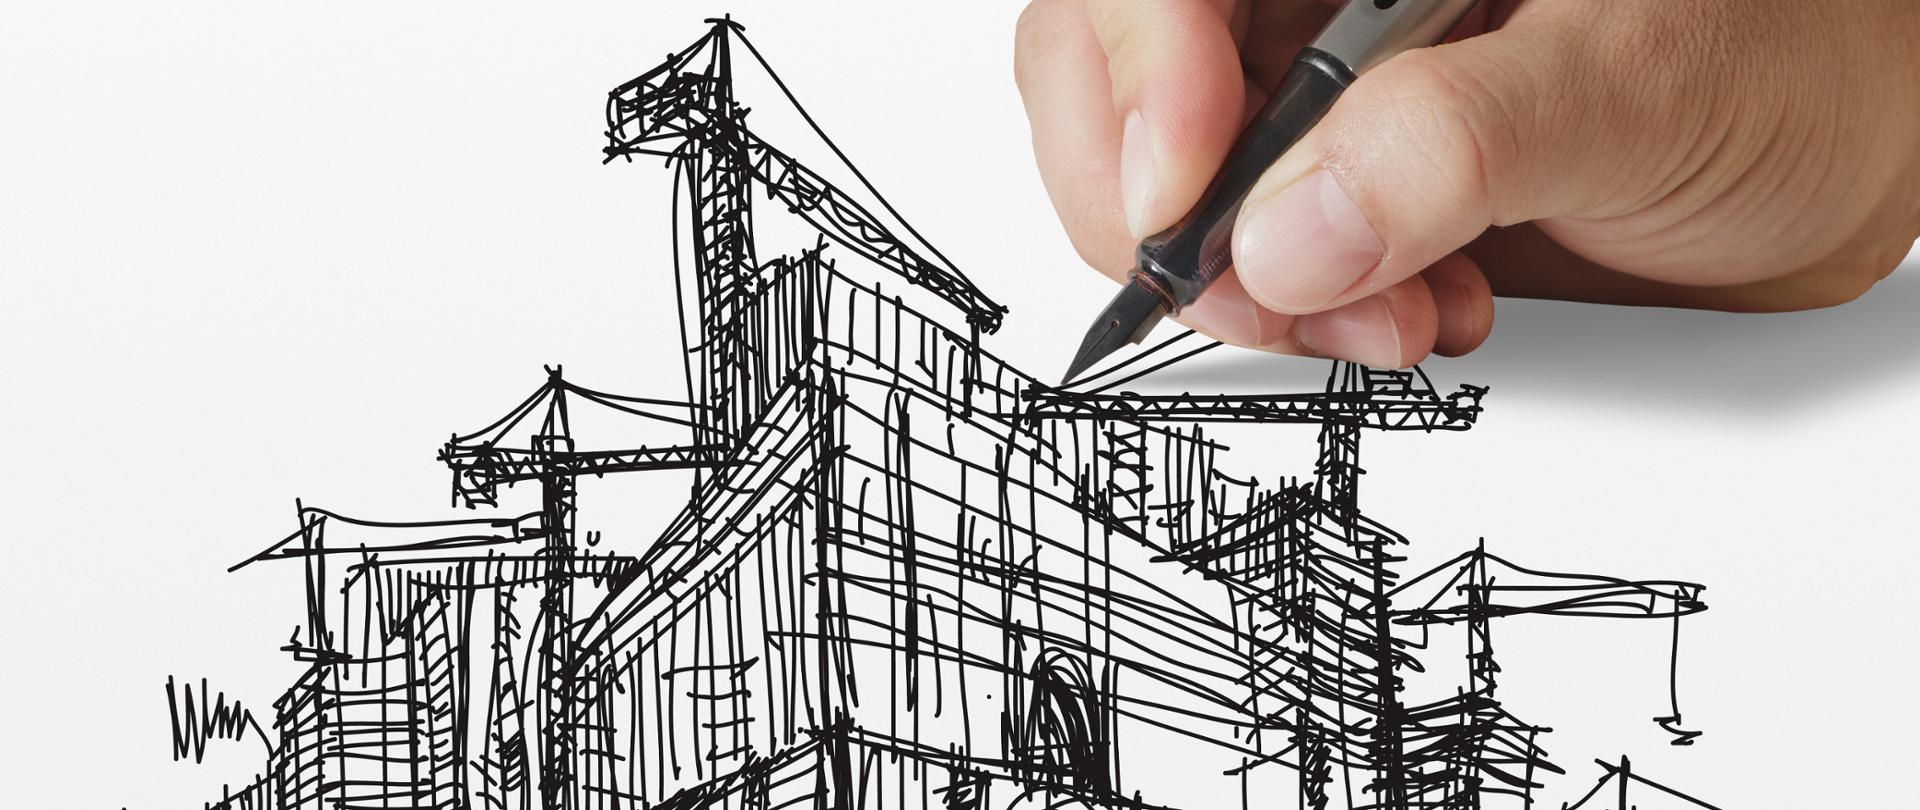 ręka rysująca rysunek architektoniczny na papierze